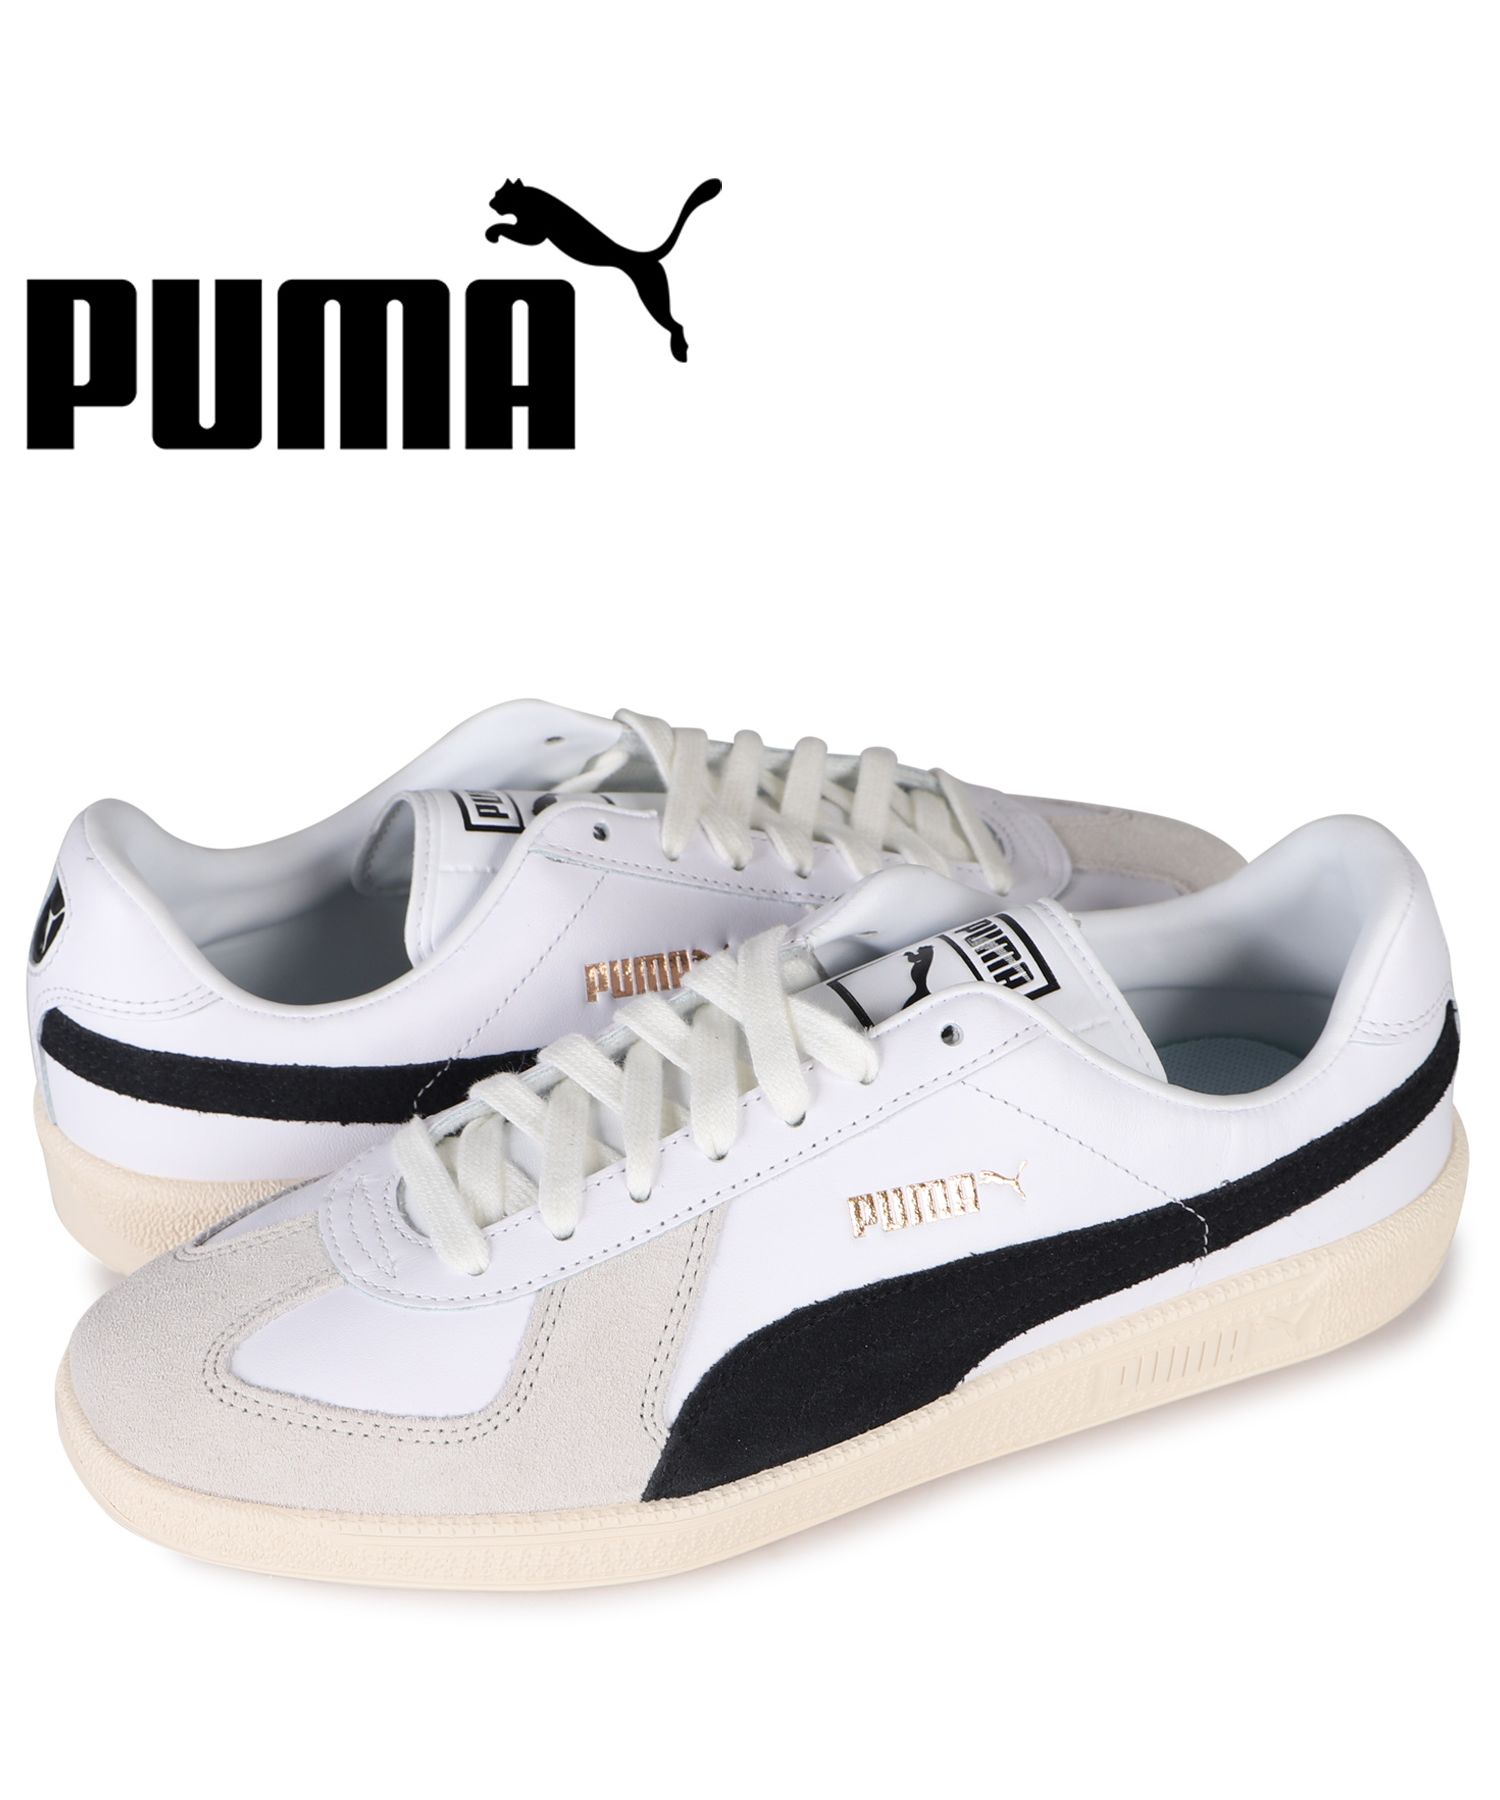 プーマ(PUMA) |PUMA プーマ スニーカー アーミートレーナー メンズ